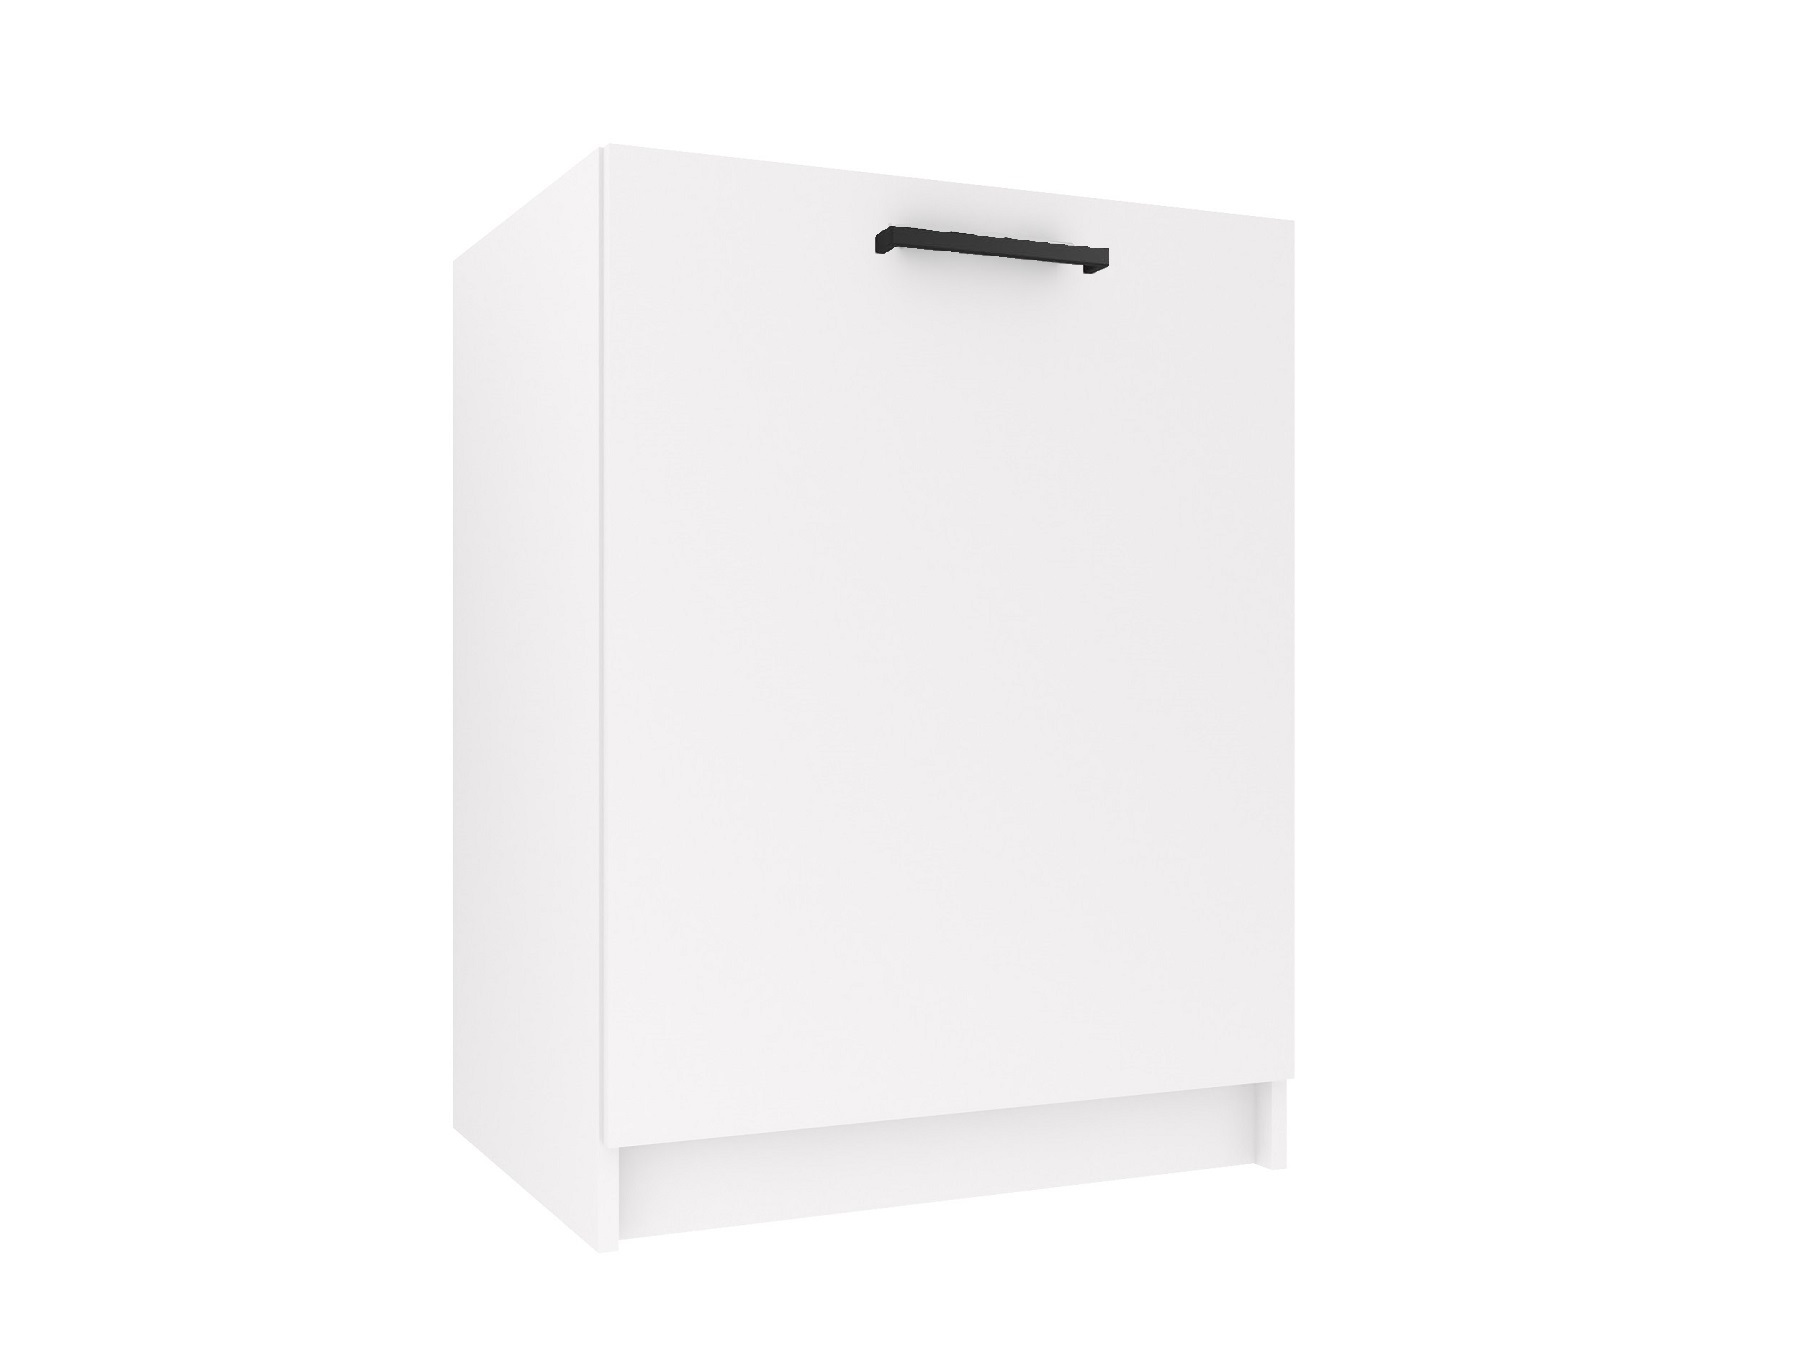 Kuchyňská skříňka Belini dřezová 60 cm bílý mat bez pracovní desky Výrobce TOR SDZ60/0/WT/WT/0/B1
